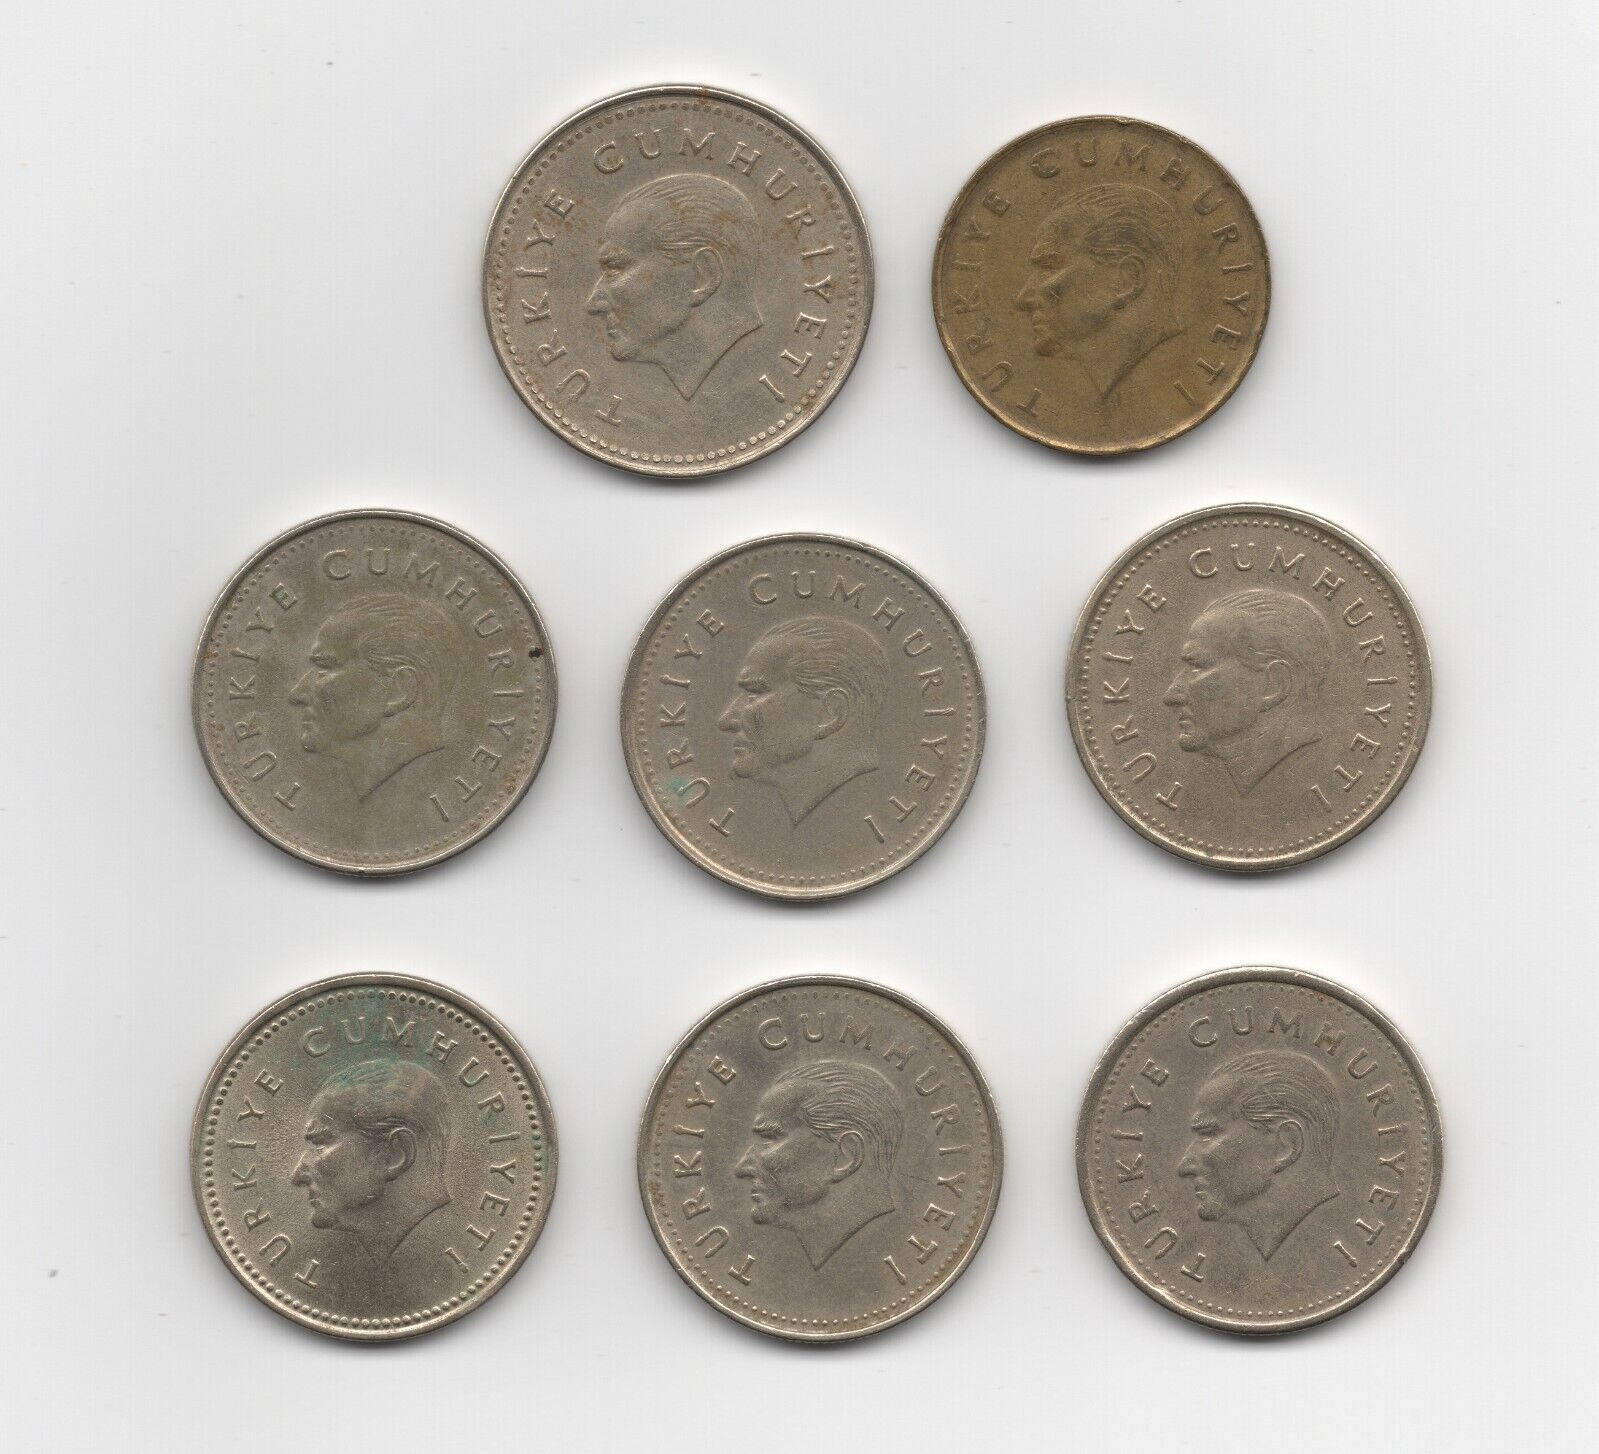 1990s Turkey 8 Coin Lot: 500 Lira, 1000 Lira, 2500 Lira Без бренда